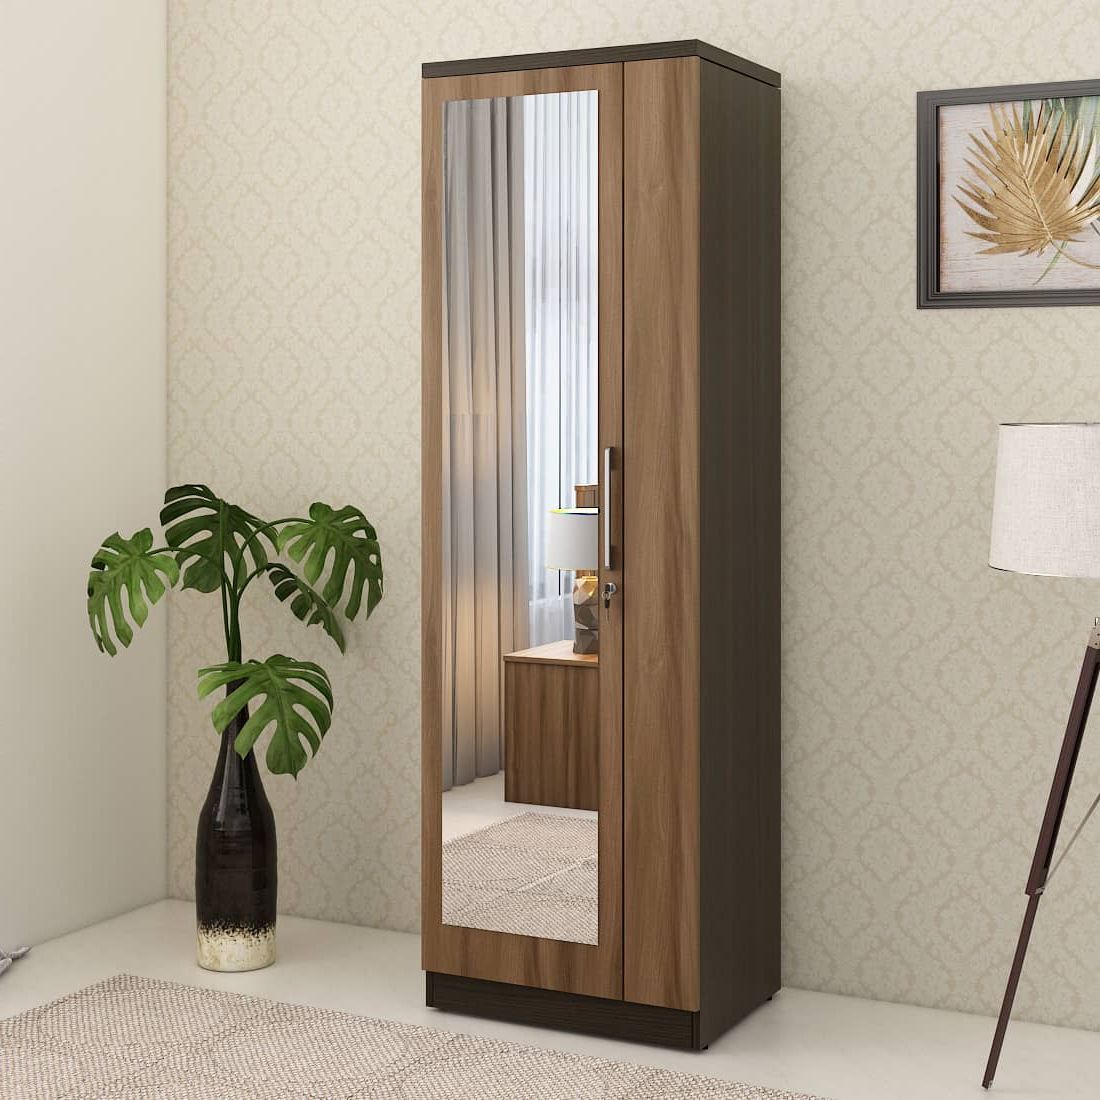 Kosmo Ken 1 Door Wardrobe With Mirror Walnut Bronze Woodpore | Spacewood  Ecommerce Intended For One Door Wardrobes With Mirror (View 2 of 20)